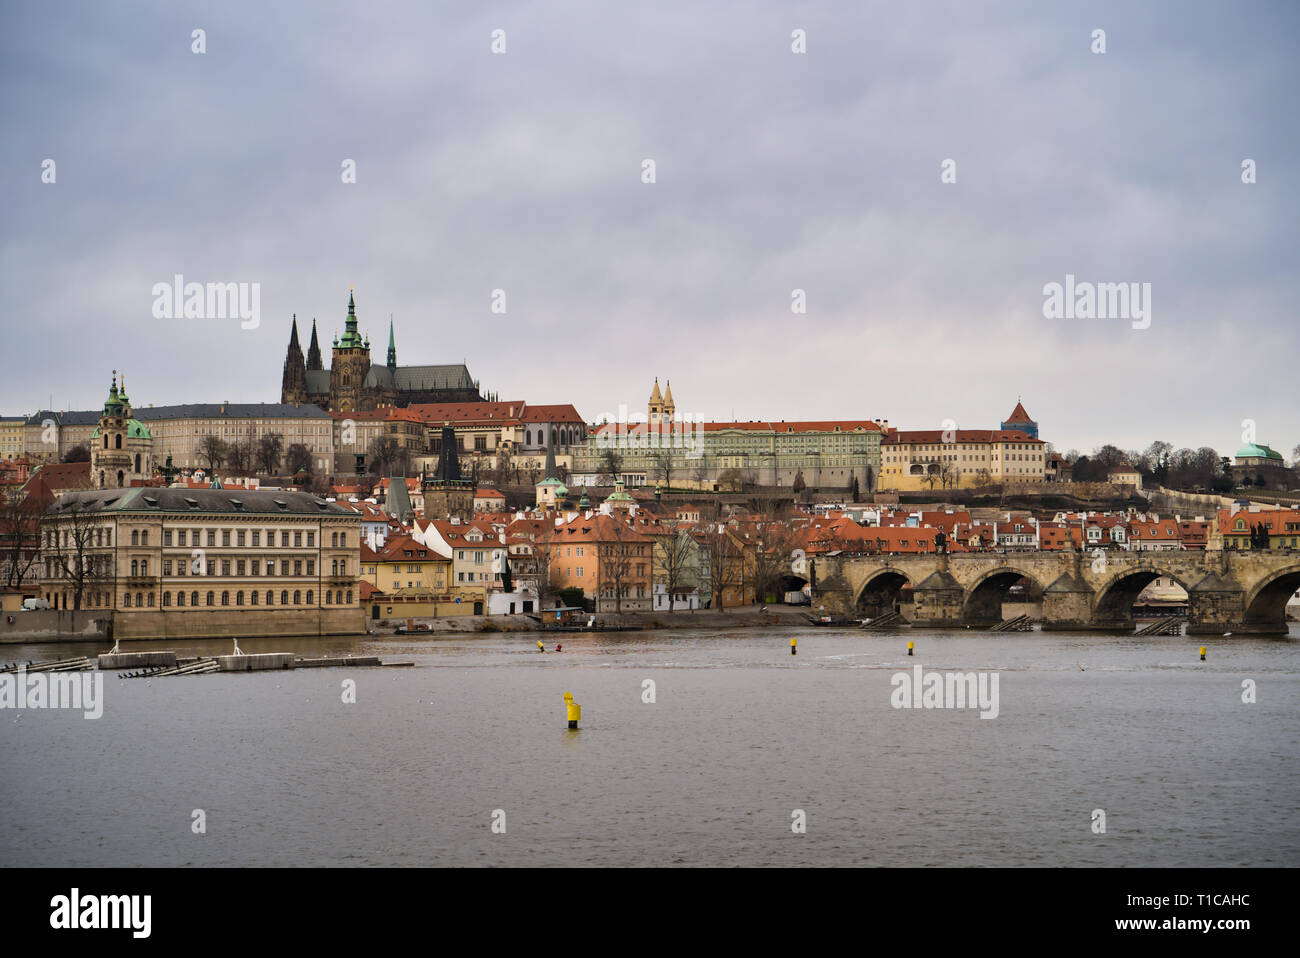 Praga, Repubblica Ceca - Marzo 04, 2019: Città Vecchia - il quartiere storico di Praga nella zona di Praga 1 area sulla sponda destra della Moldava Foto Stock